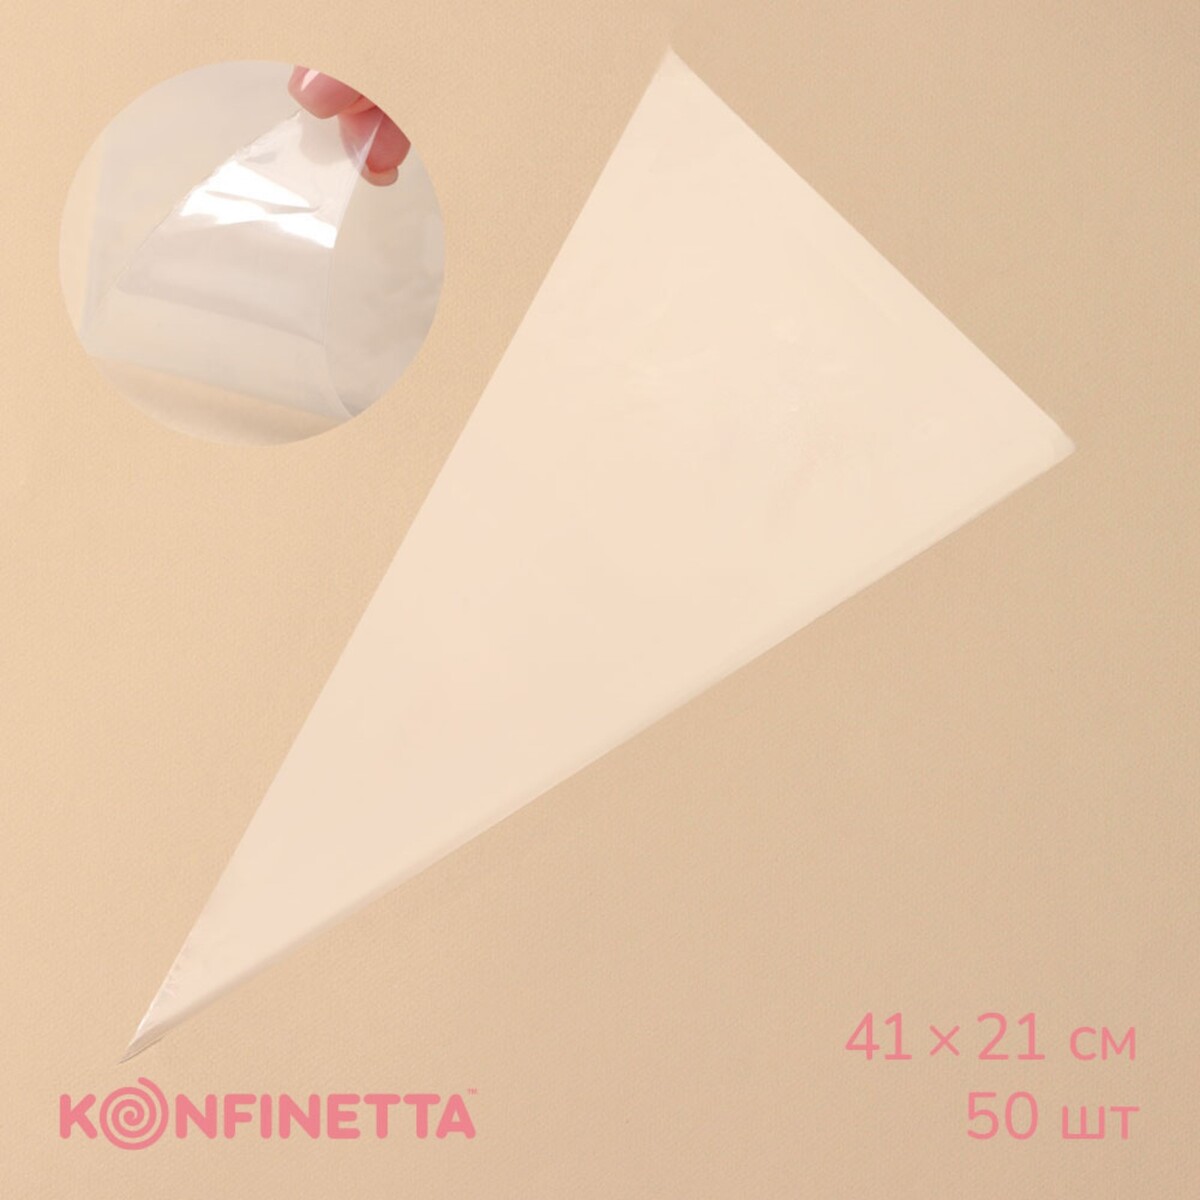 Кондитерские мешки konfinetta, 41×21 см, 50 шт, цвет прозрачный кондитерские мешки konfinetta 41×21 см 50 шт прозрачный